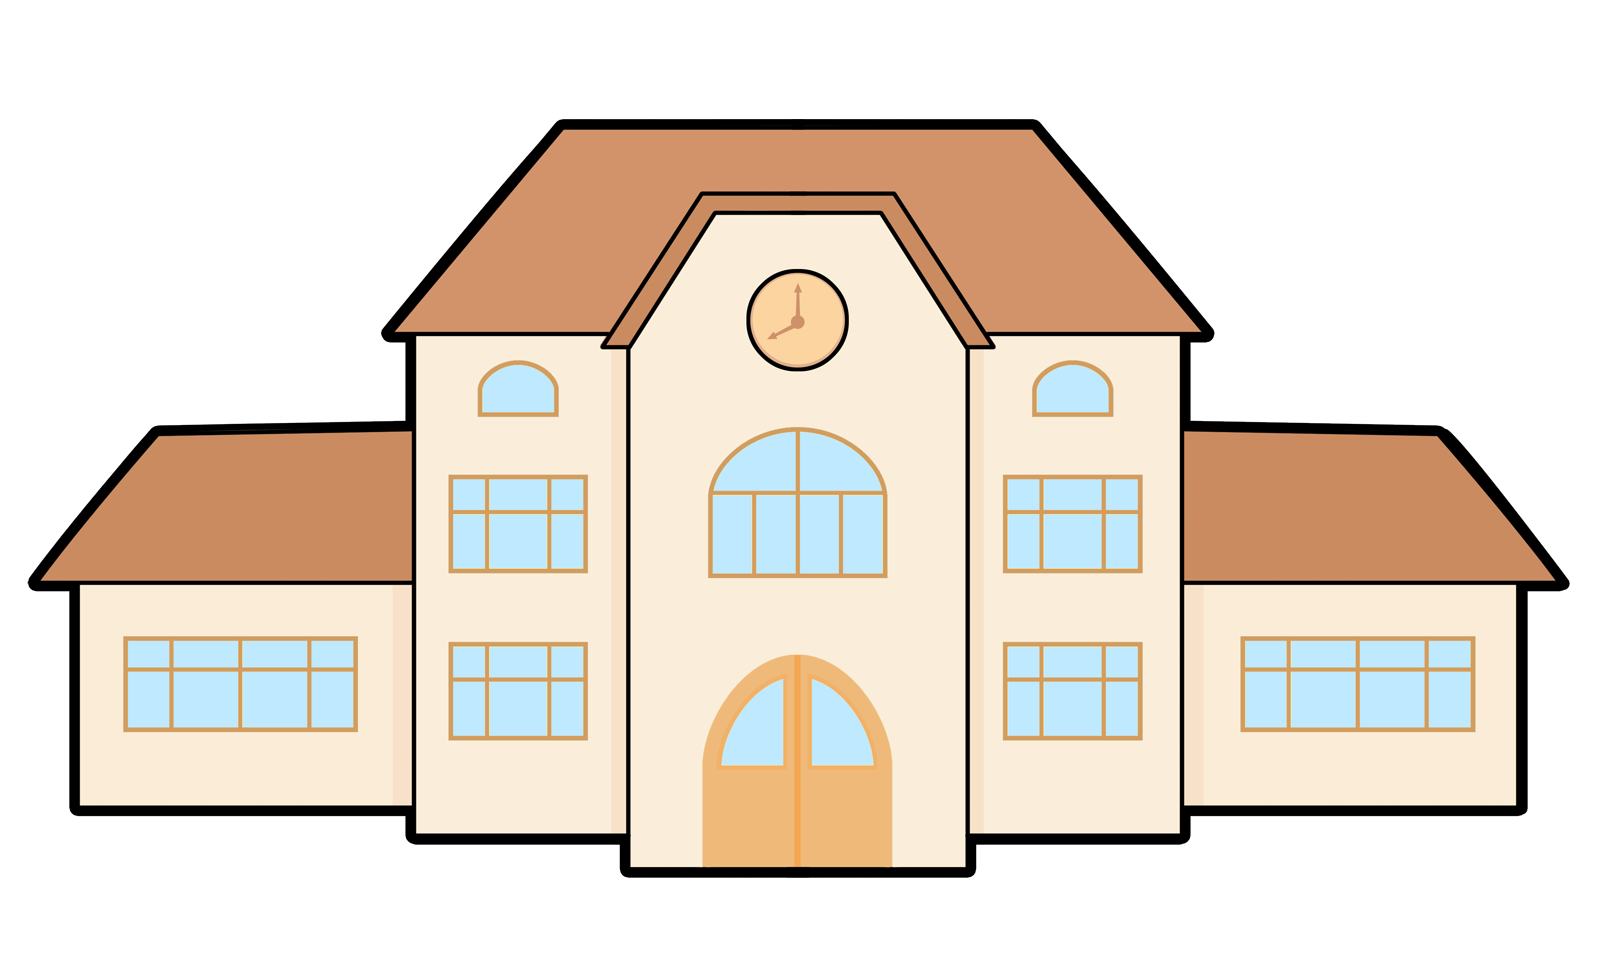 School building in flat style